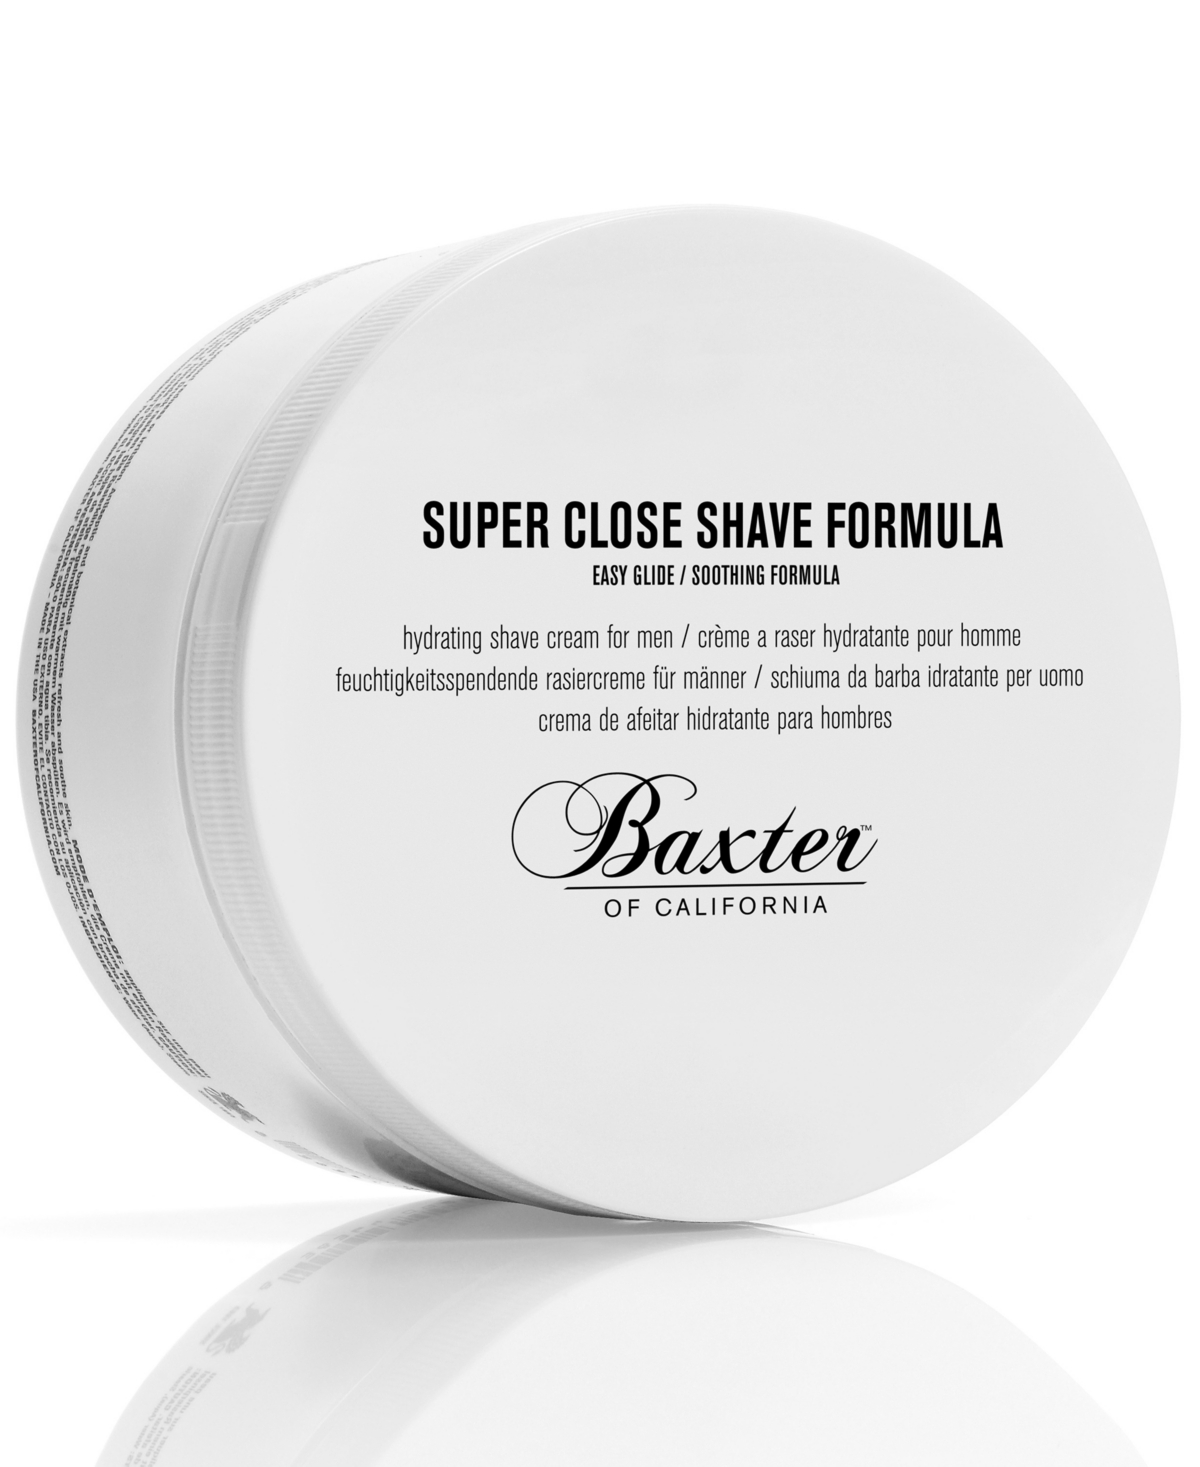 Super Close Shave Formula, 8-oz.